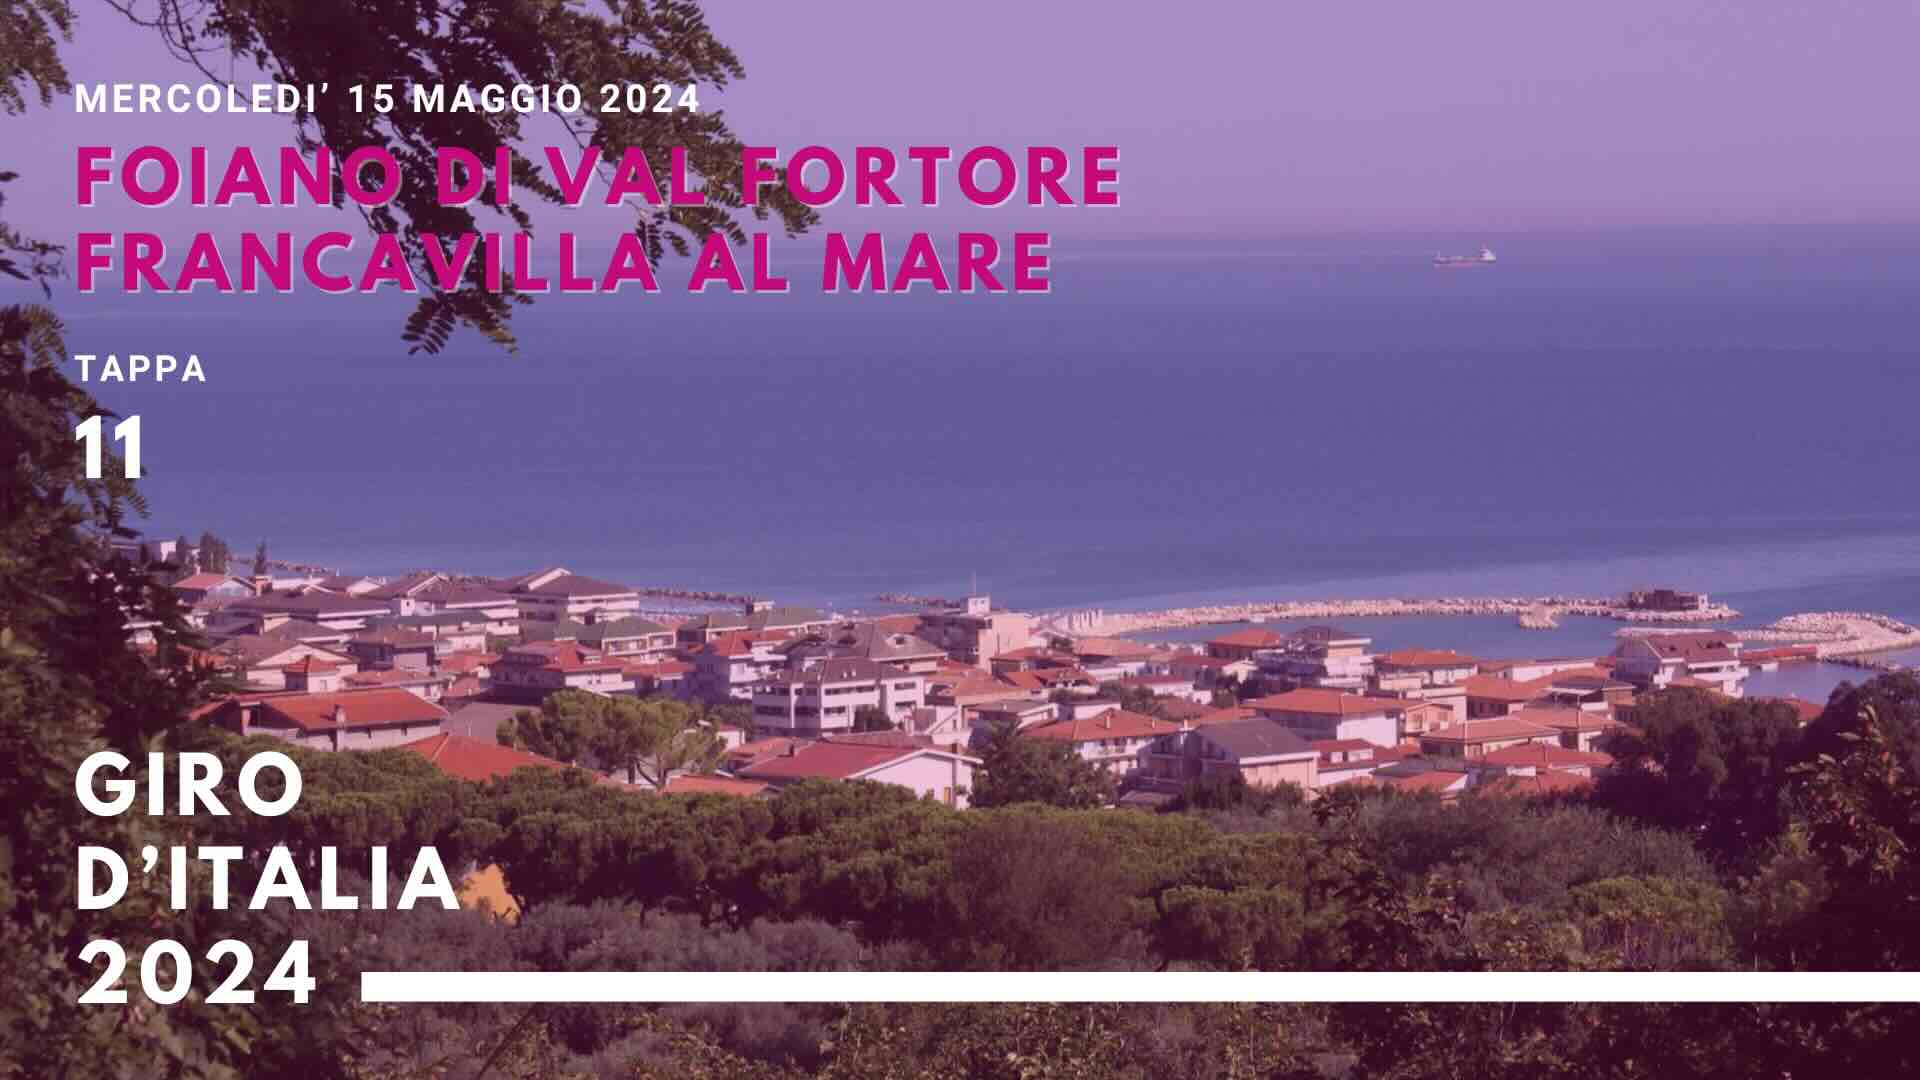 Giro d’Italia in Abruzzo strade chiuse a Francavilla al mare Foiano di Val Fortore